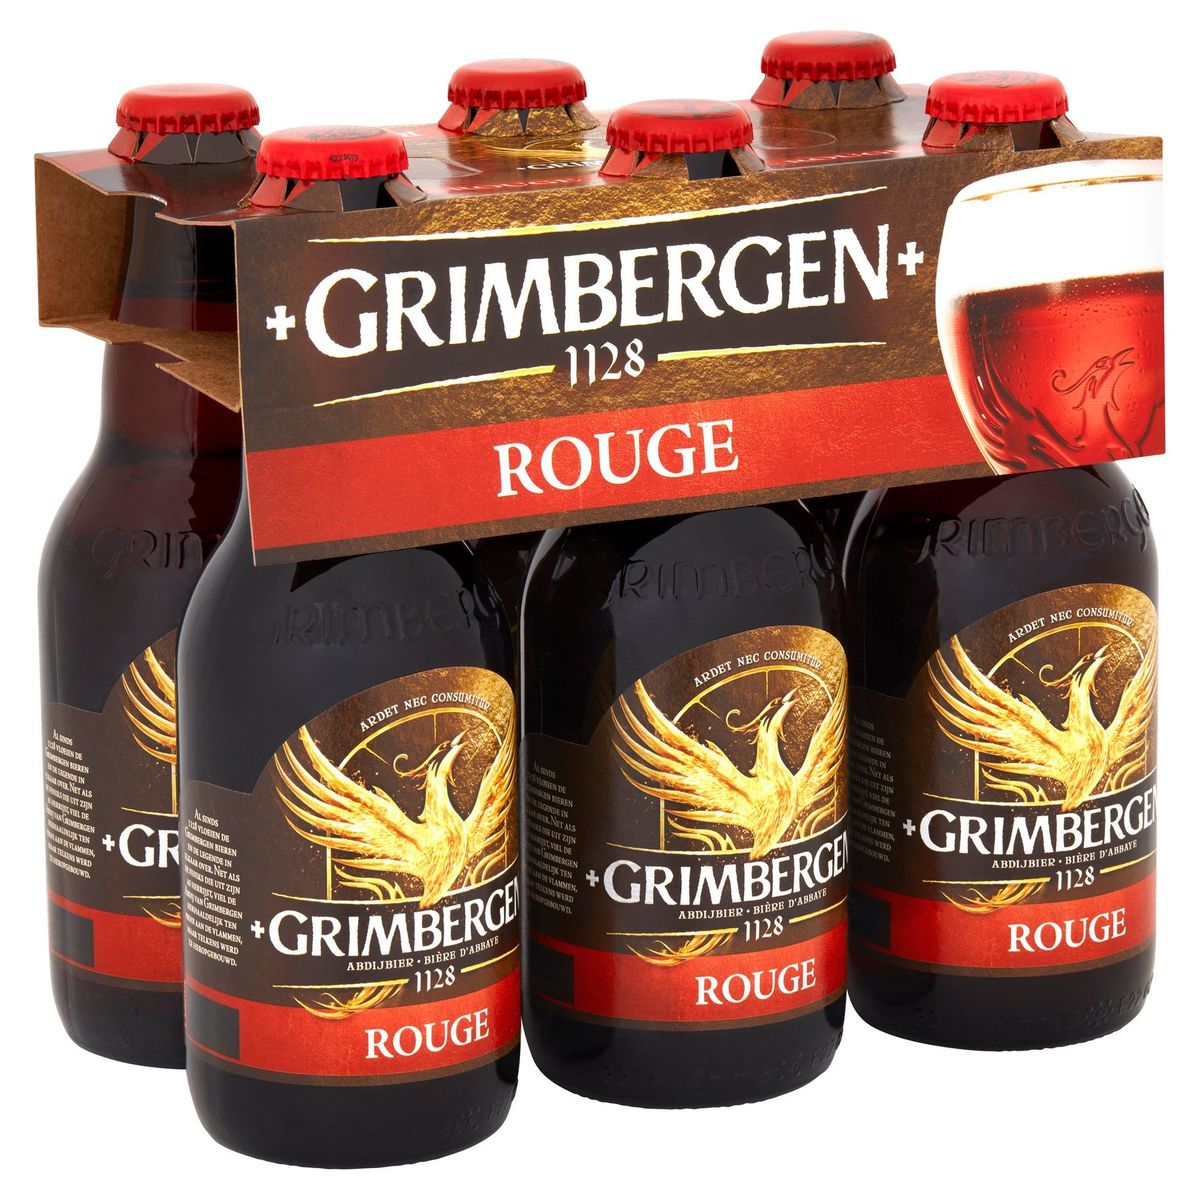 Grimbergen Bière d'abbeye Rouge 6% ALC 6x33cl Bouteille